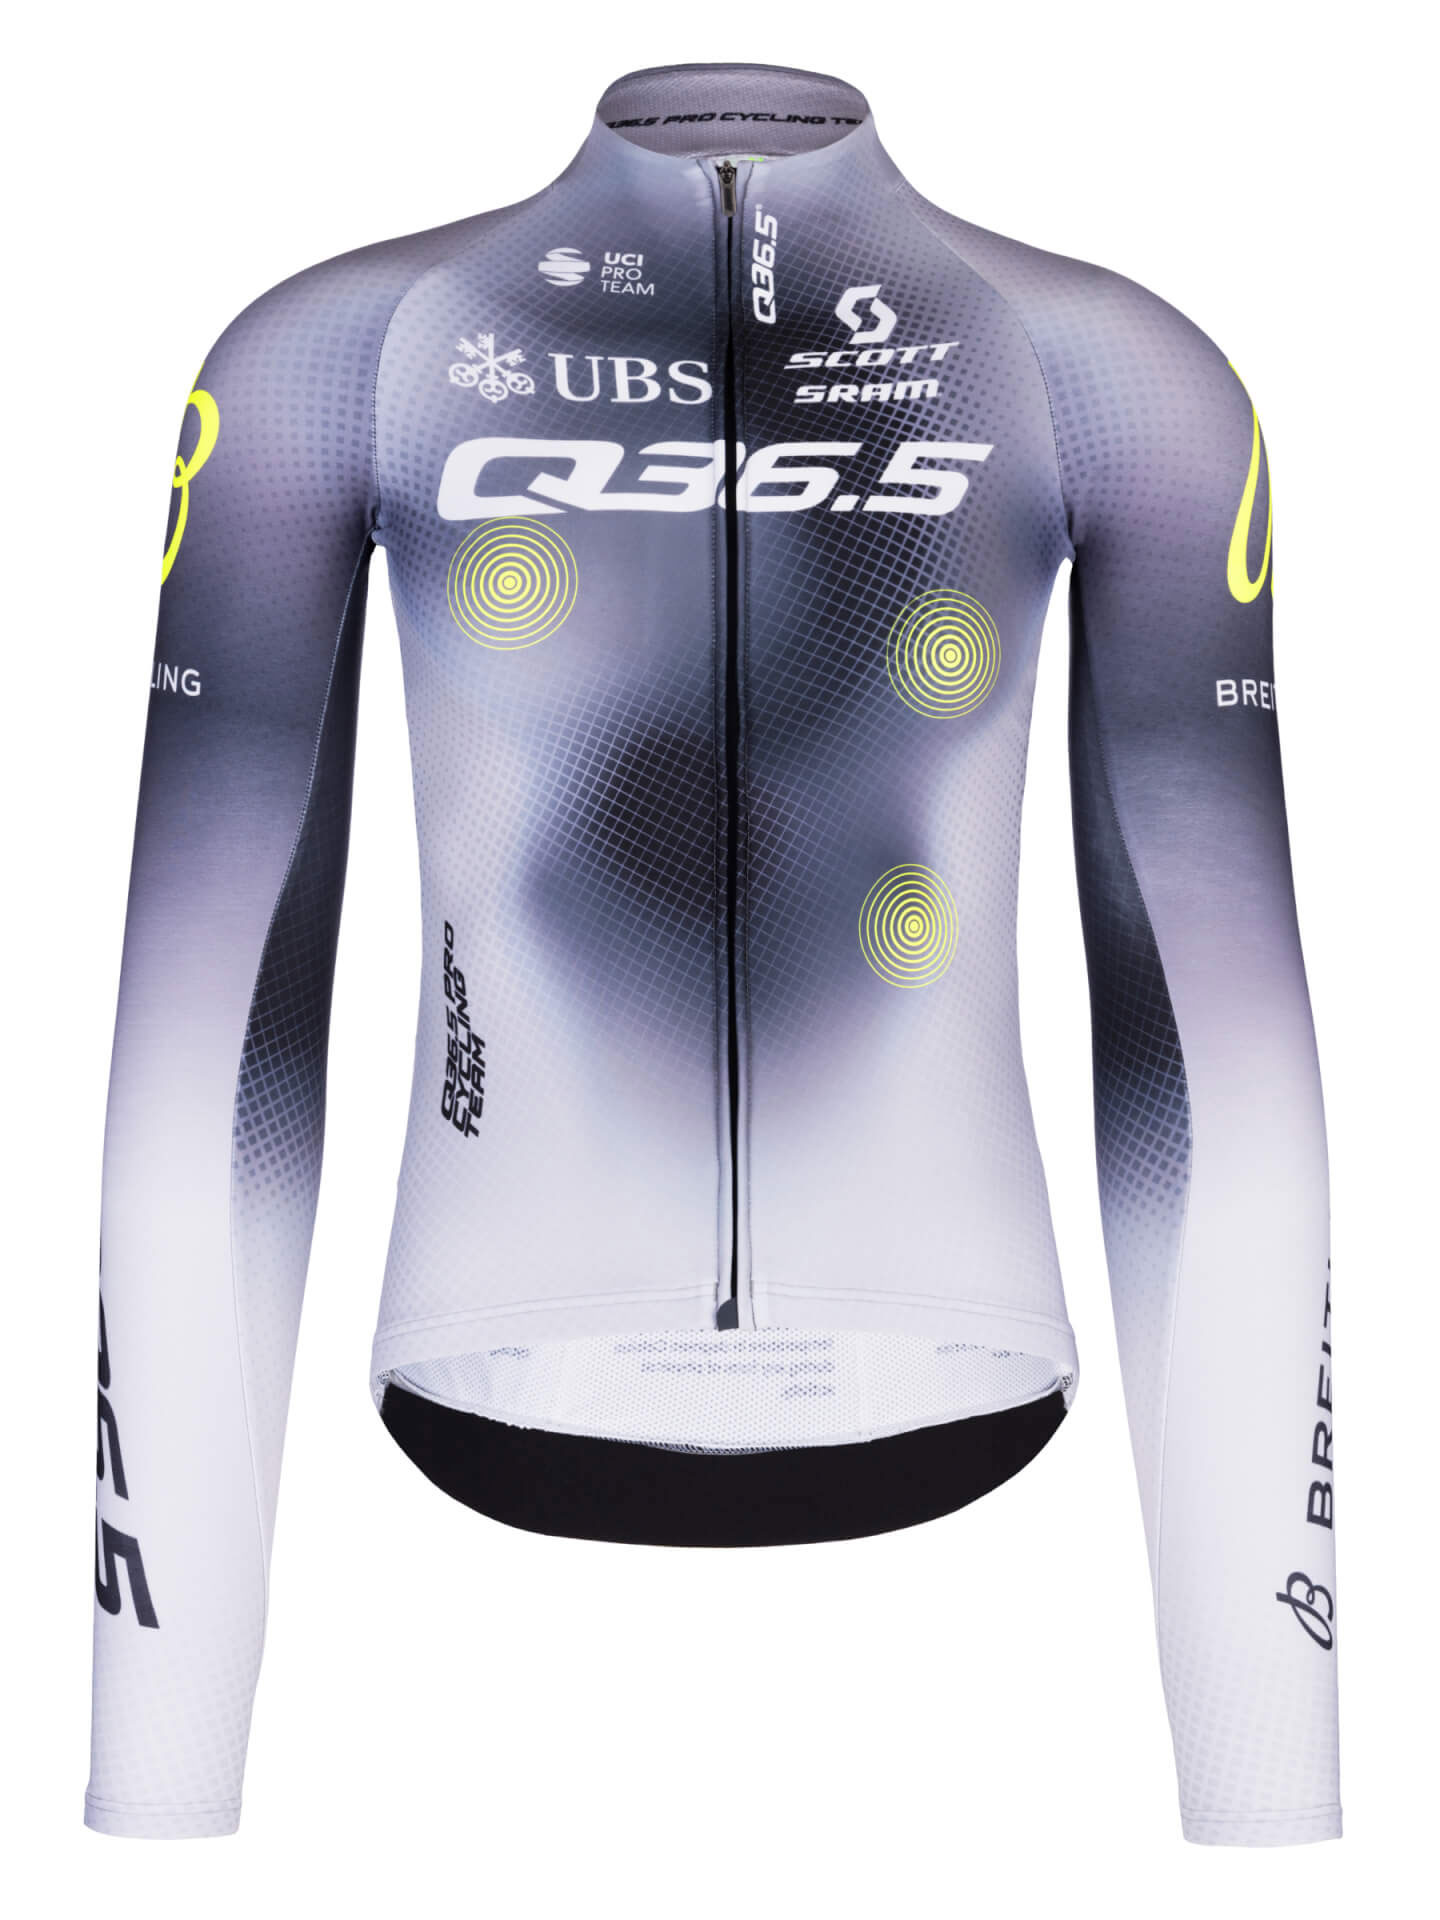 Q36.5 Pro Cycling Team Long Sleeve Jersey • Q36.5